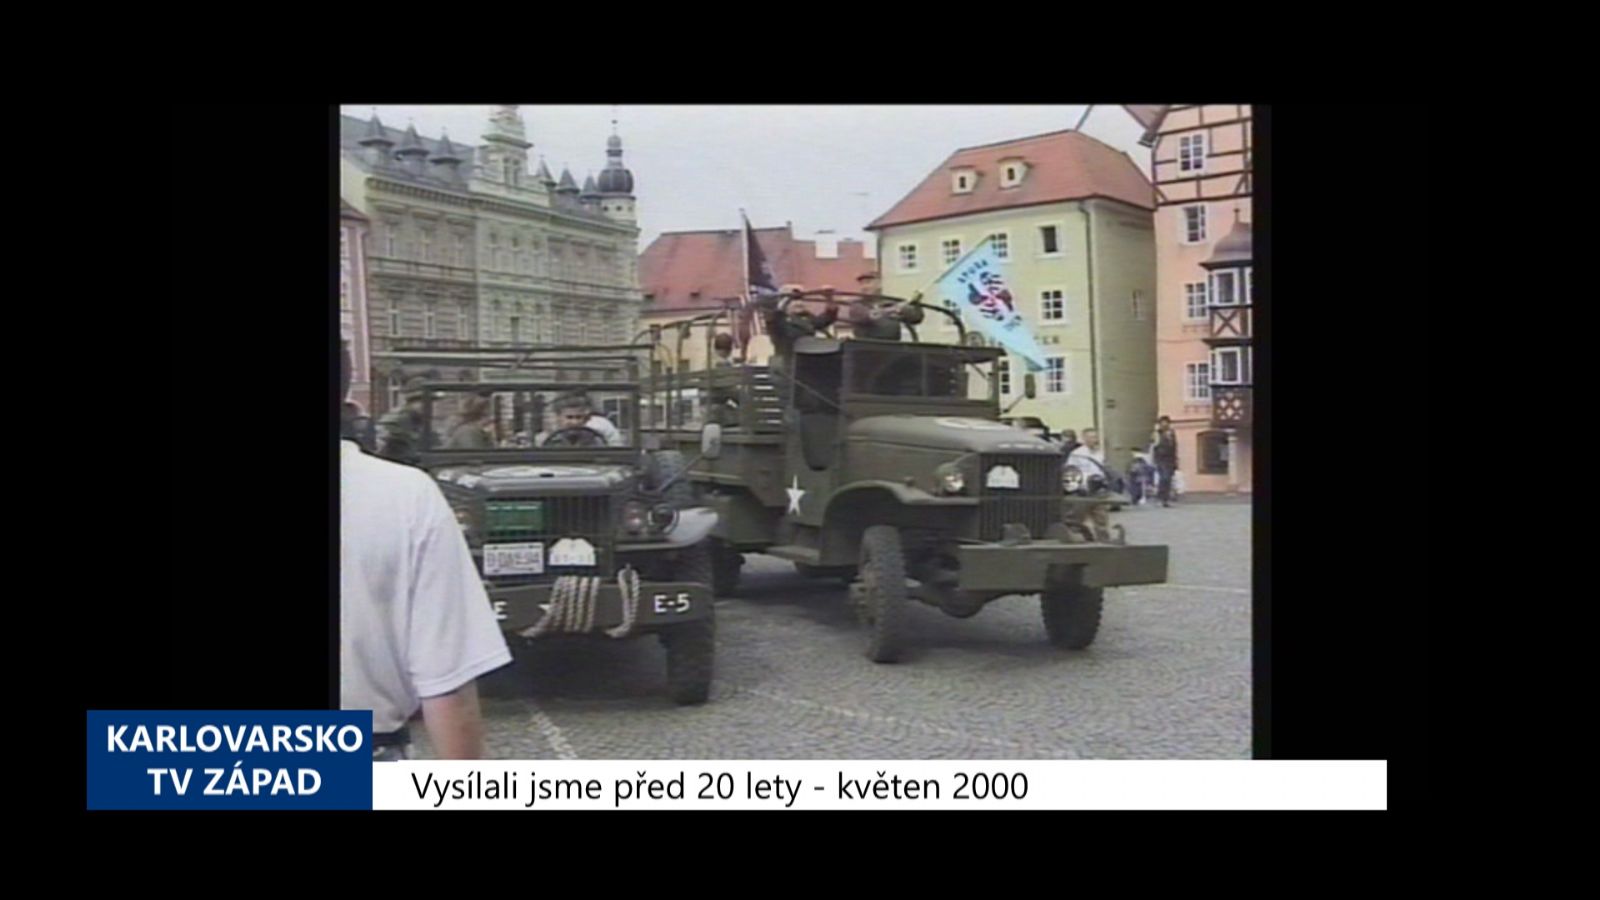 2000 – Cheb: Obyvatelé si připomněli 55. výročí osvobození města (TV Západ)